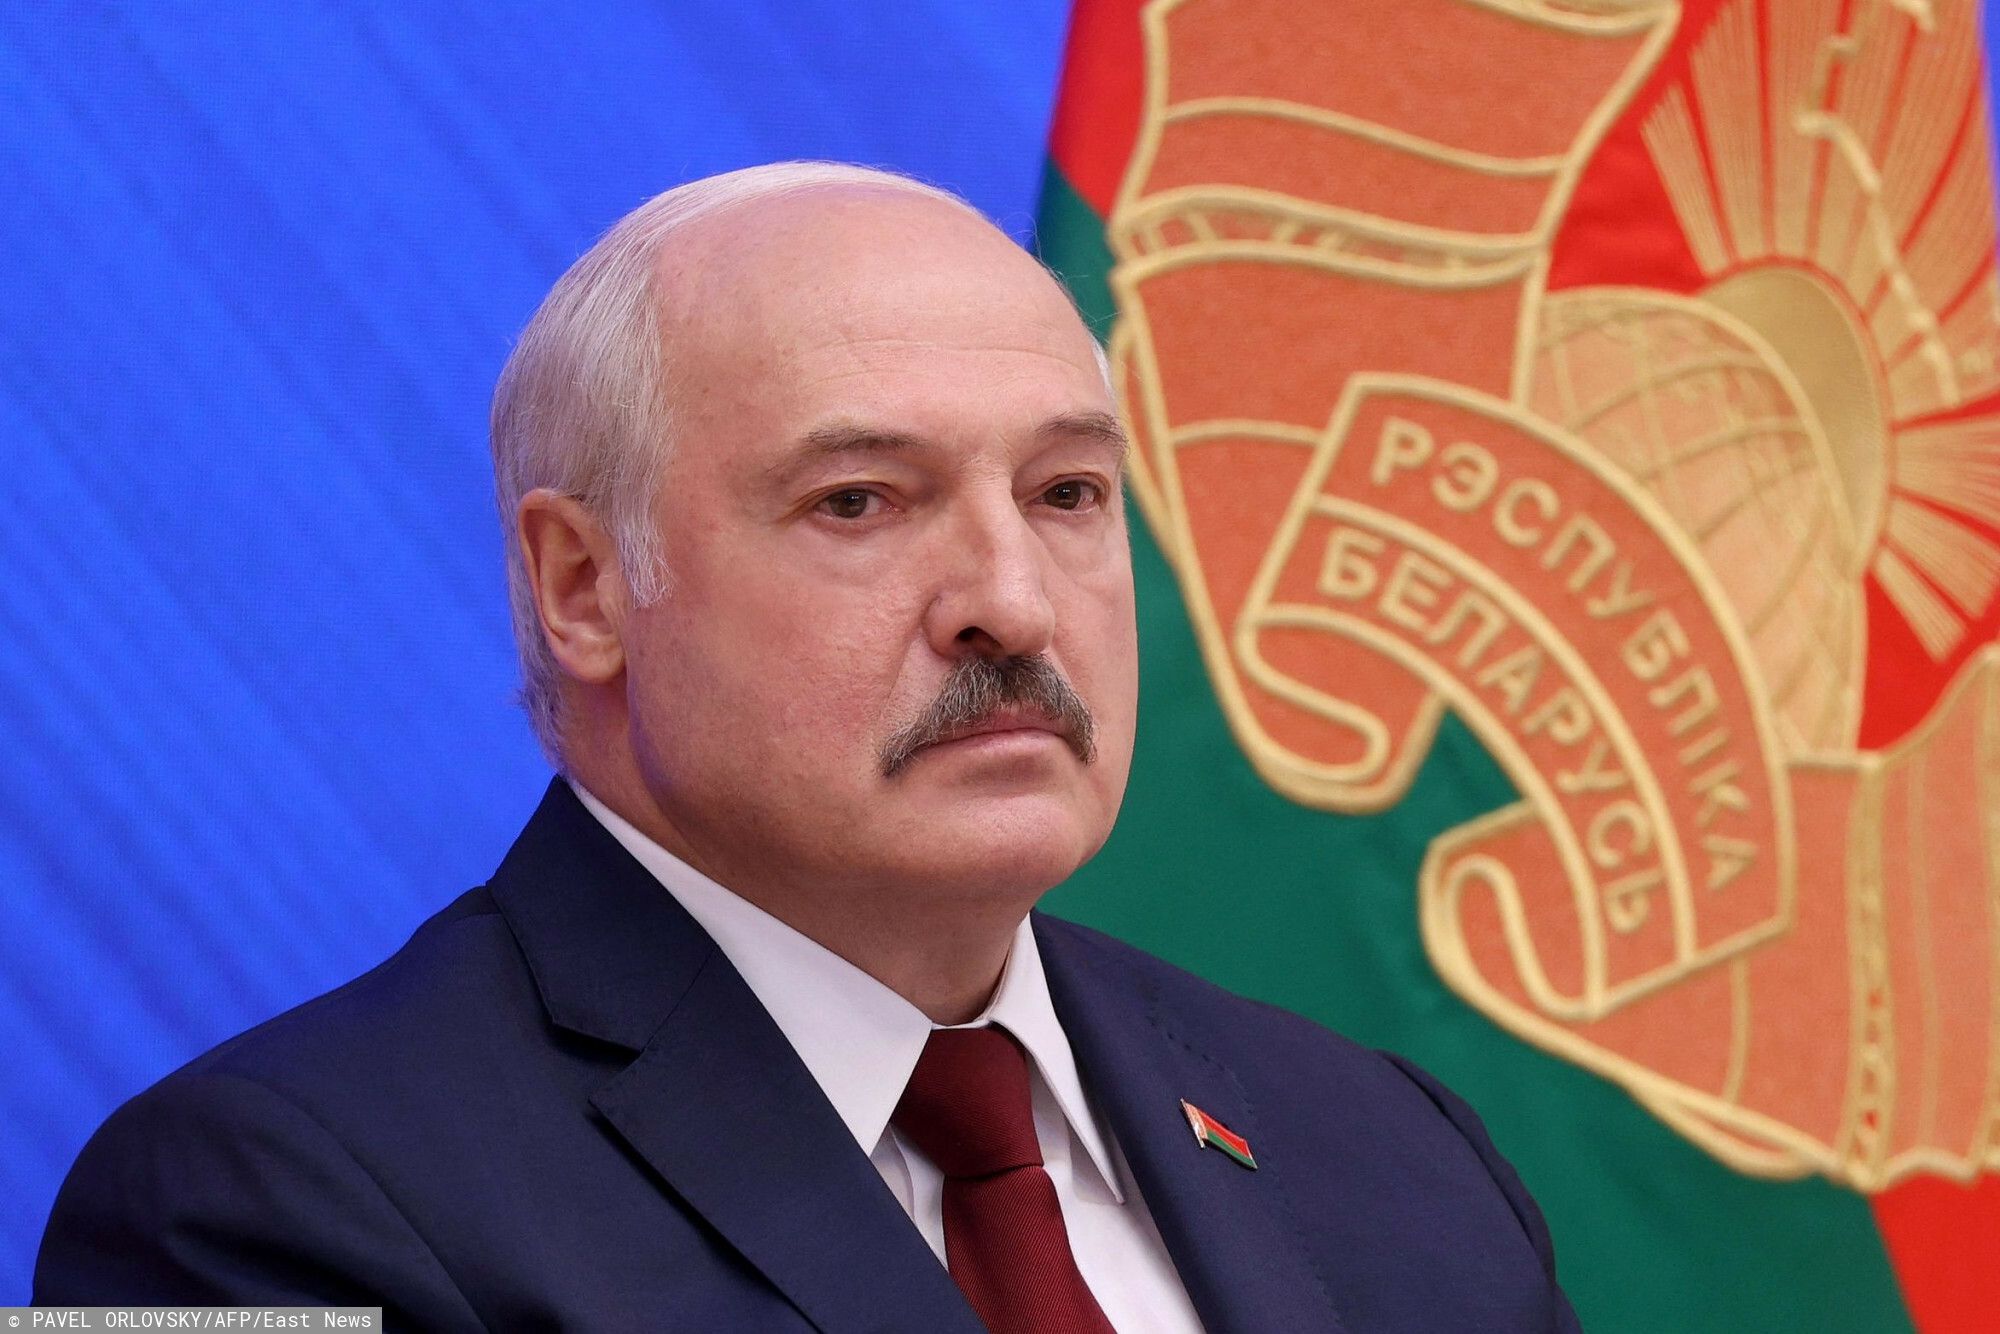 Szef białoruskiego MSZ ujawnił, że rozmawiał z europejskimi politykami na temat kryzysu migracyjnego na granicy